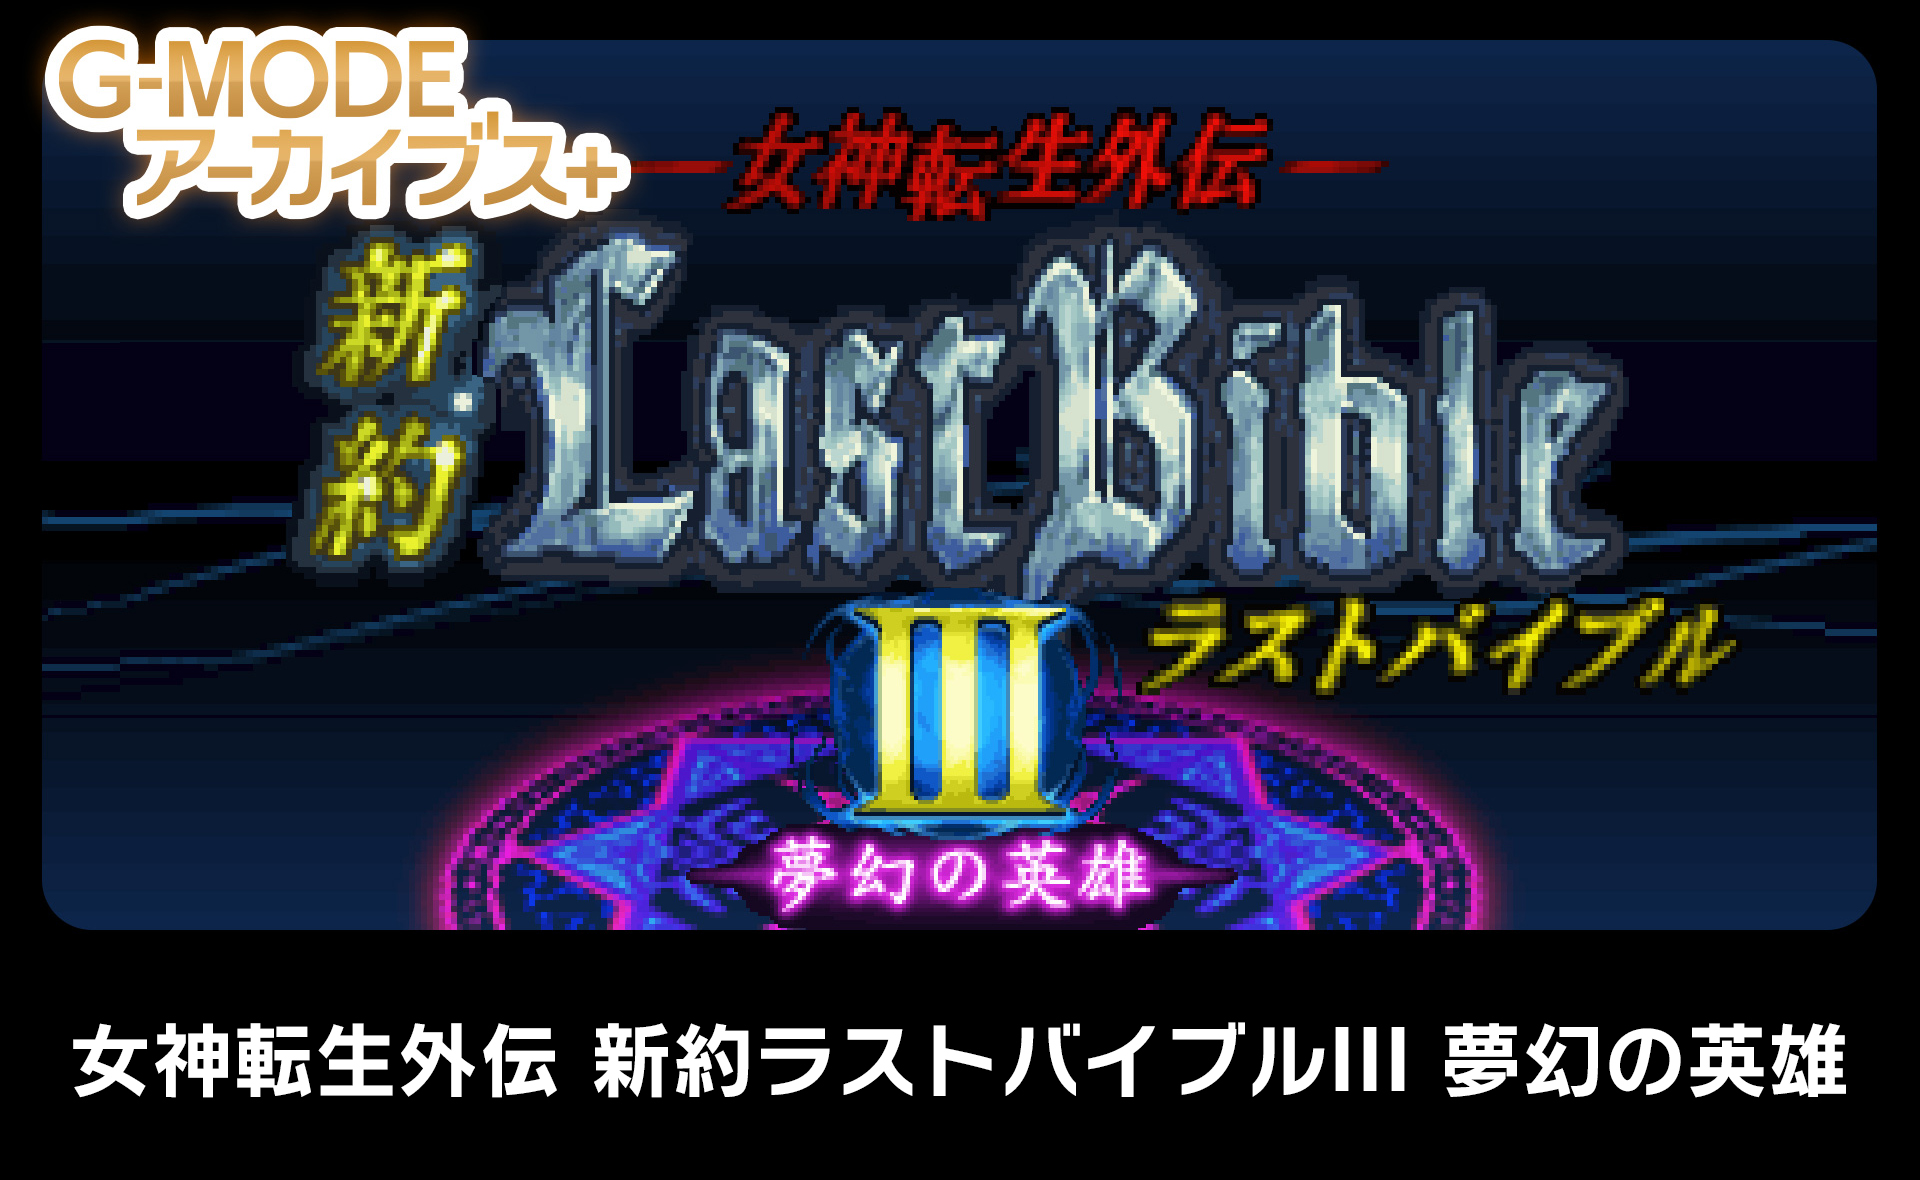 Megami Tensei Gaiden Shinyaku Last Bible III